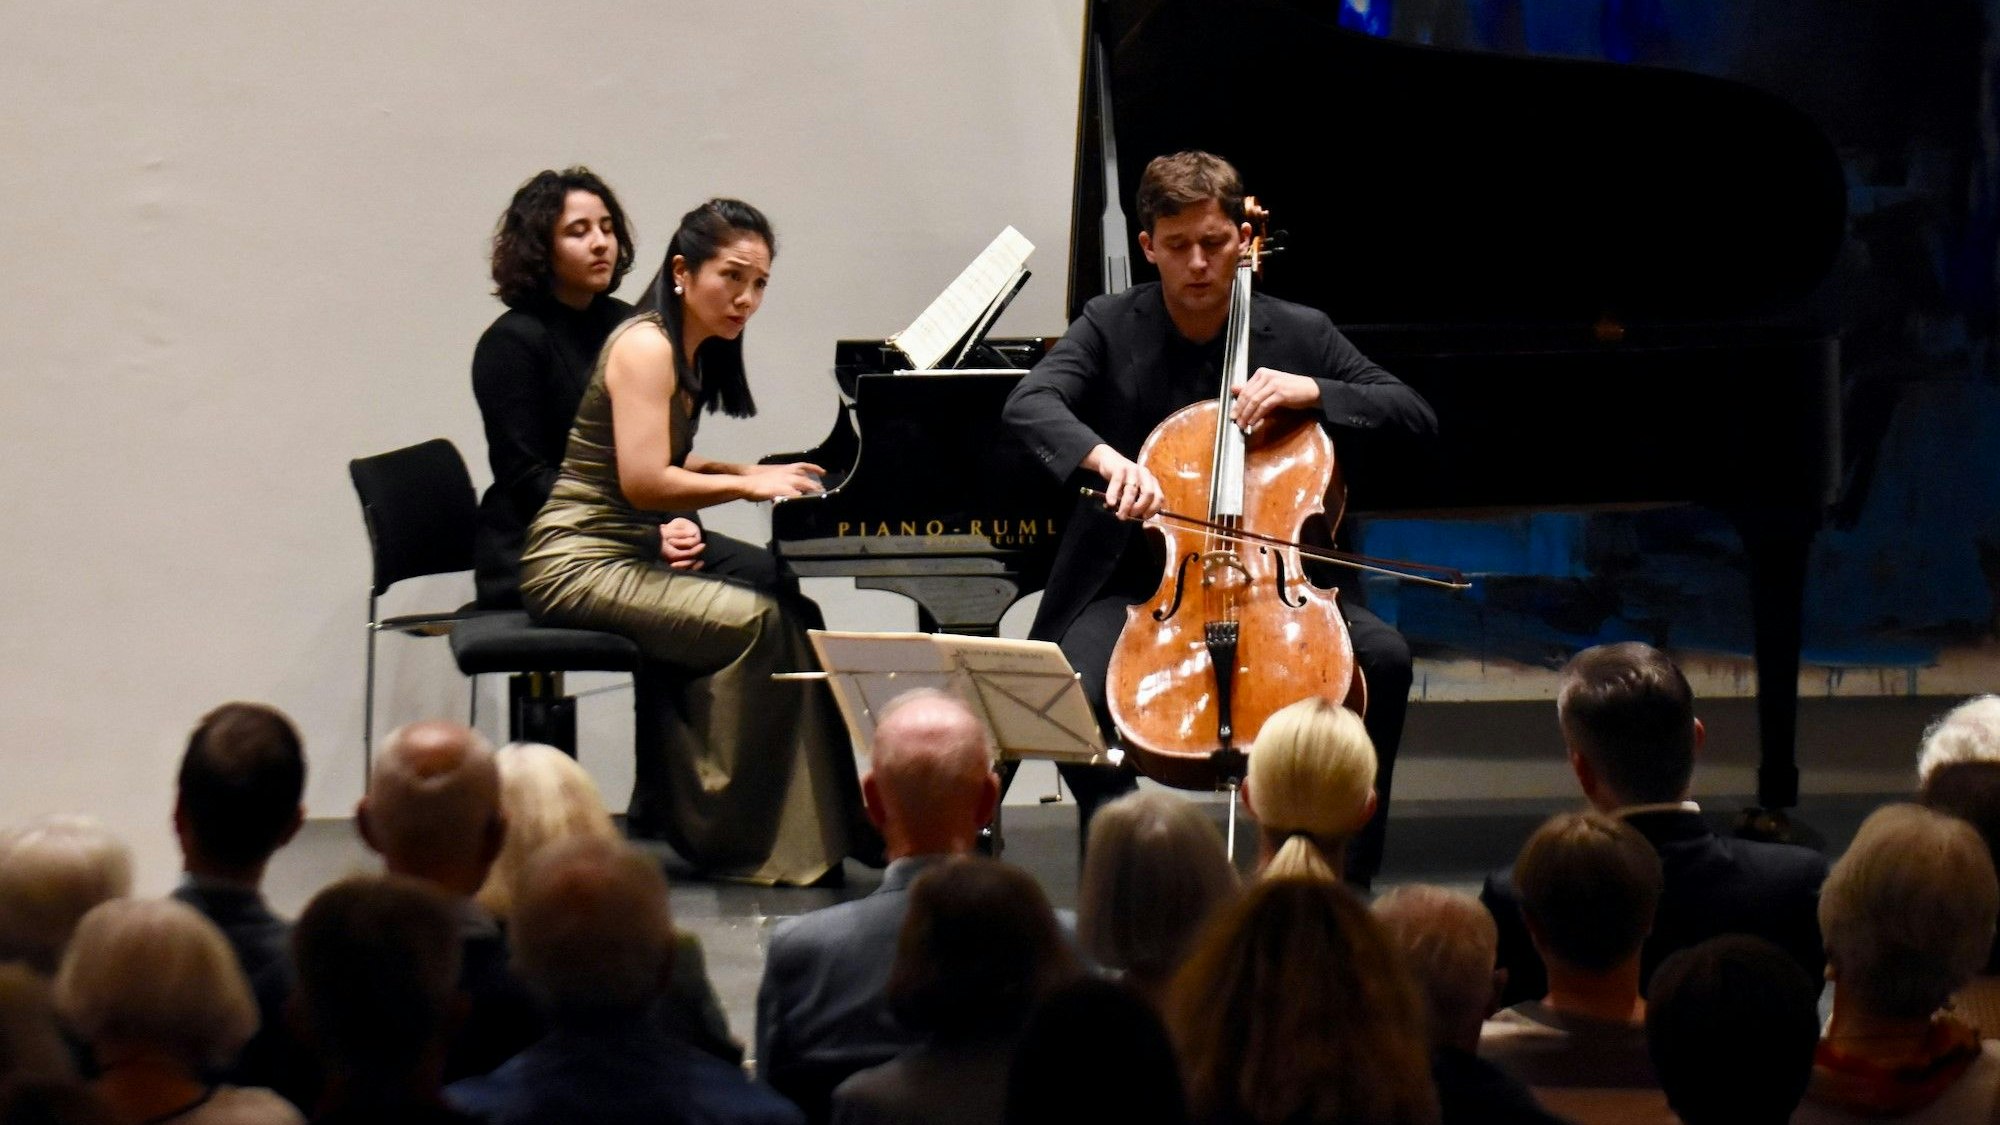 Eine Pianistin und ein Cellist spielen in in einem Konzertsaal.